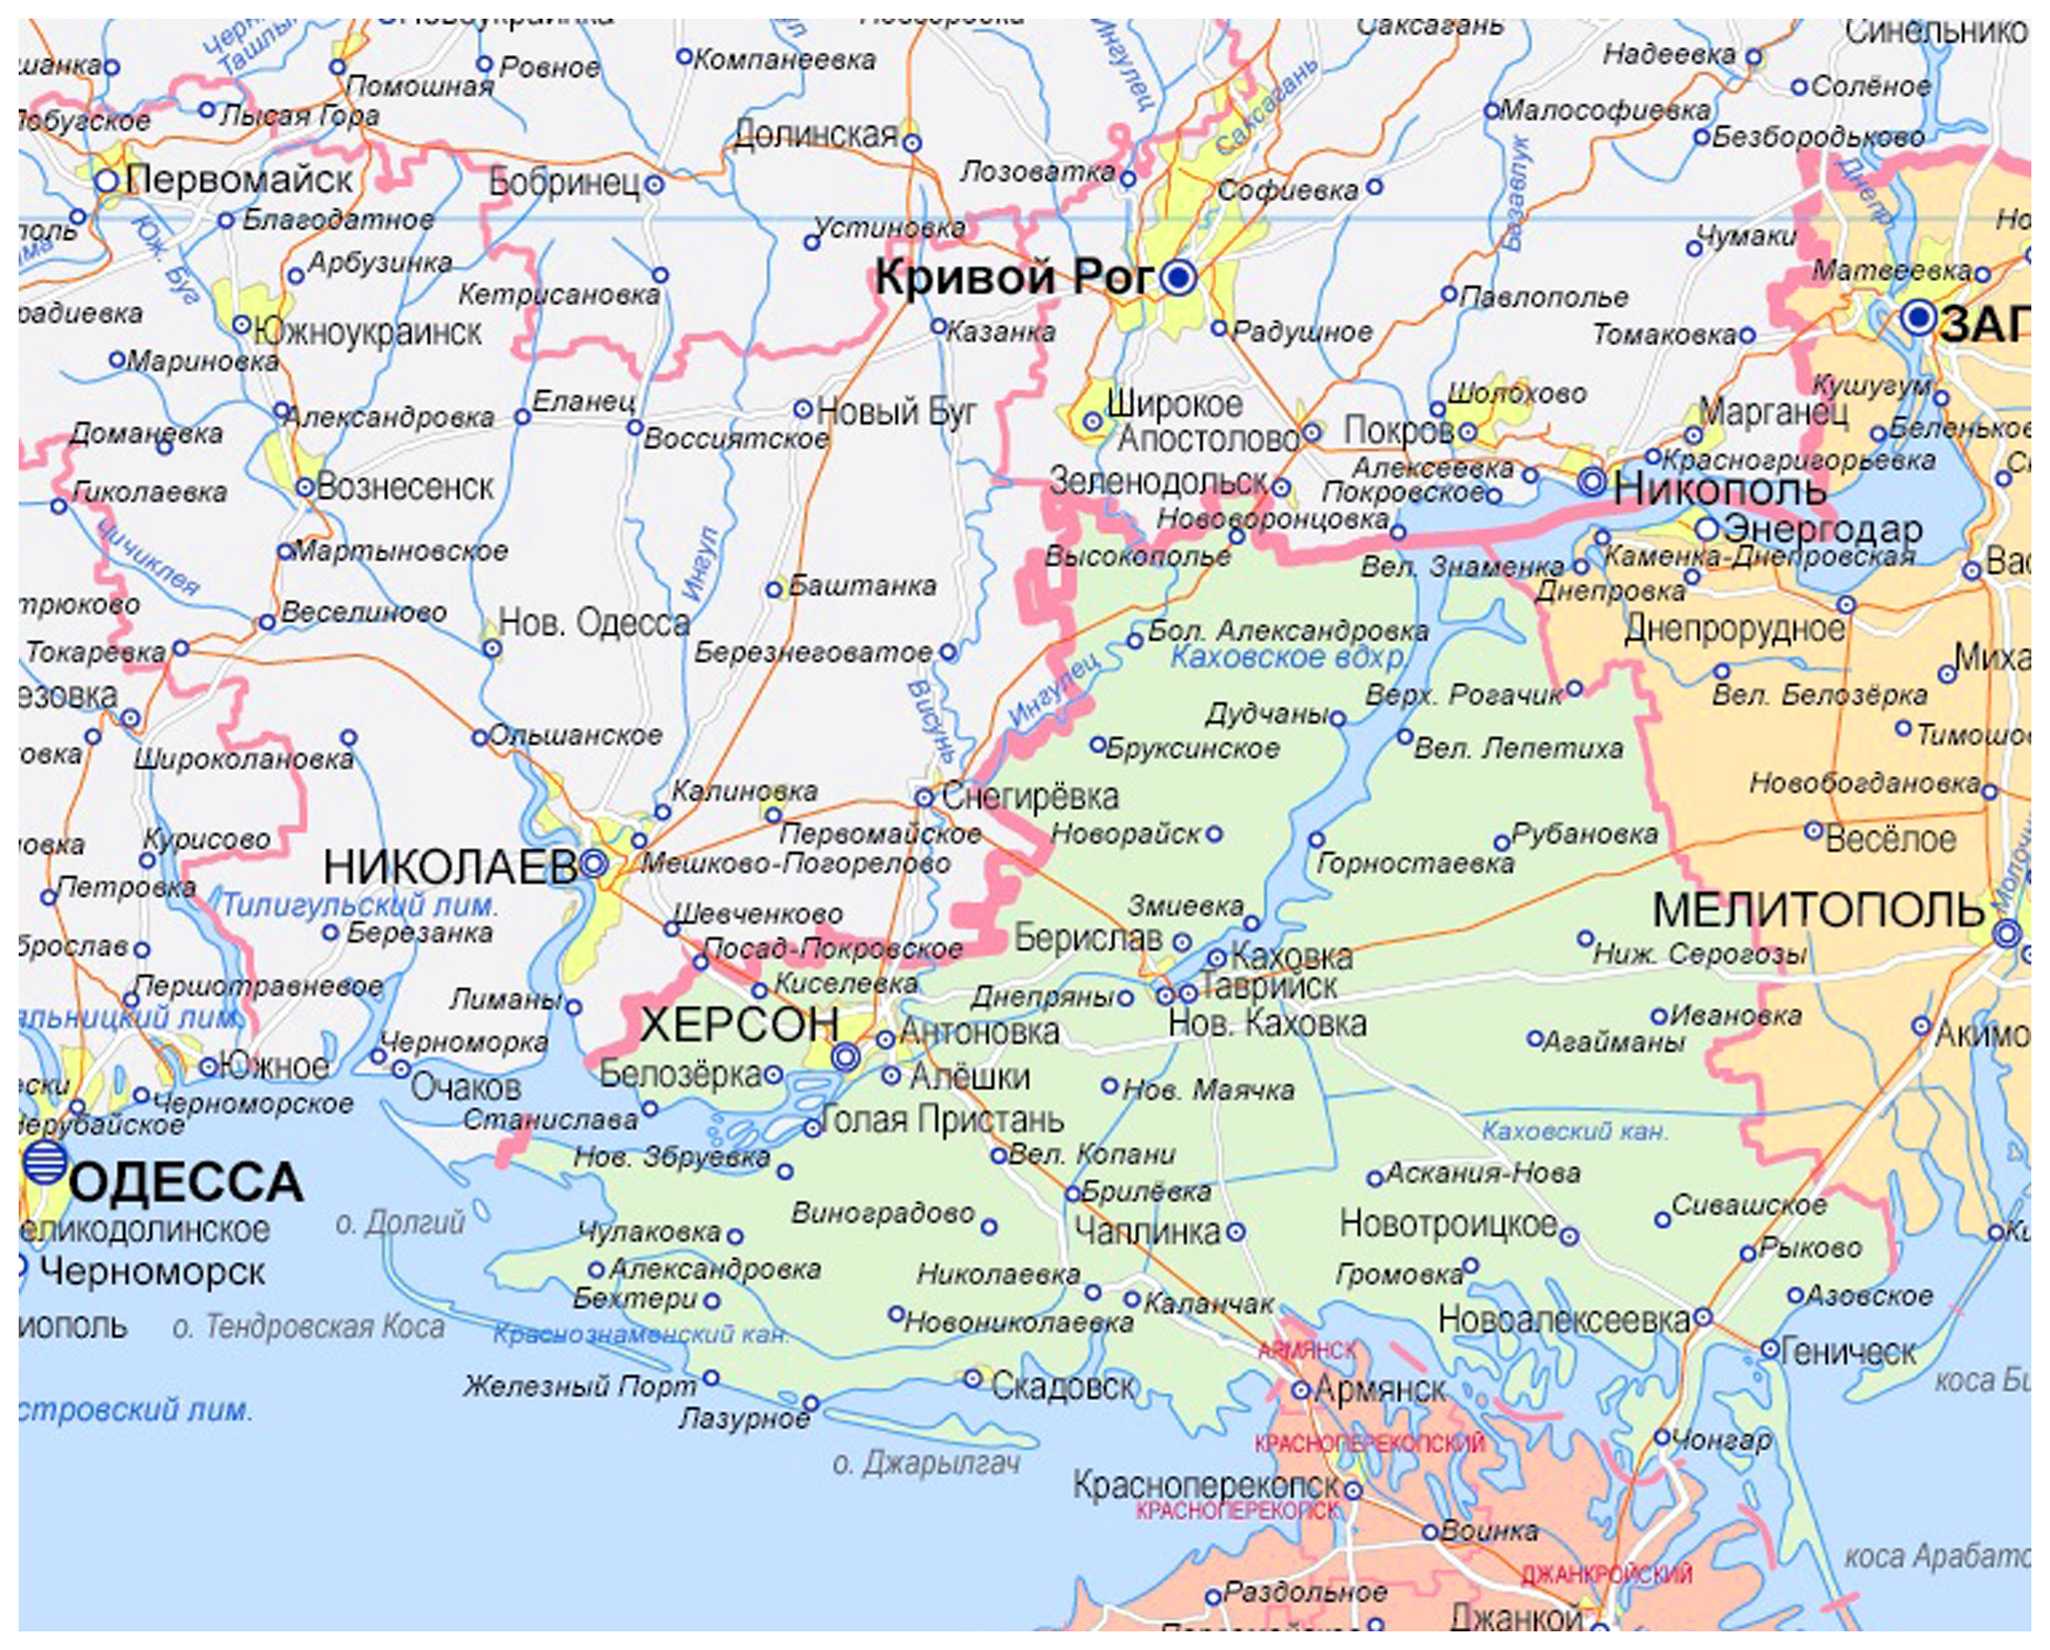 Карта украины херсонского направления. Херсонская и Запорожская область на карте. Херсонская область на карте Украины. Херсонская область и Запорожская область на карте Украины. Границы Херсонской области на карте.